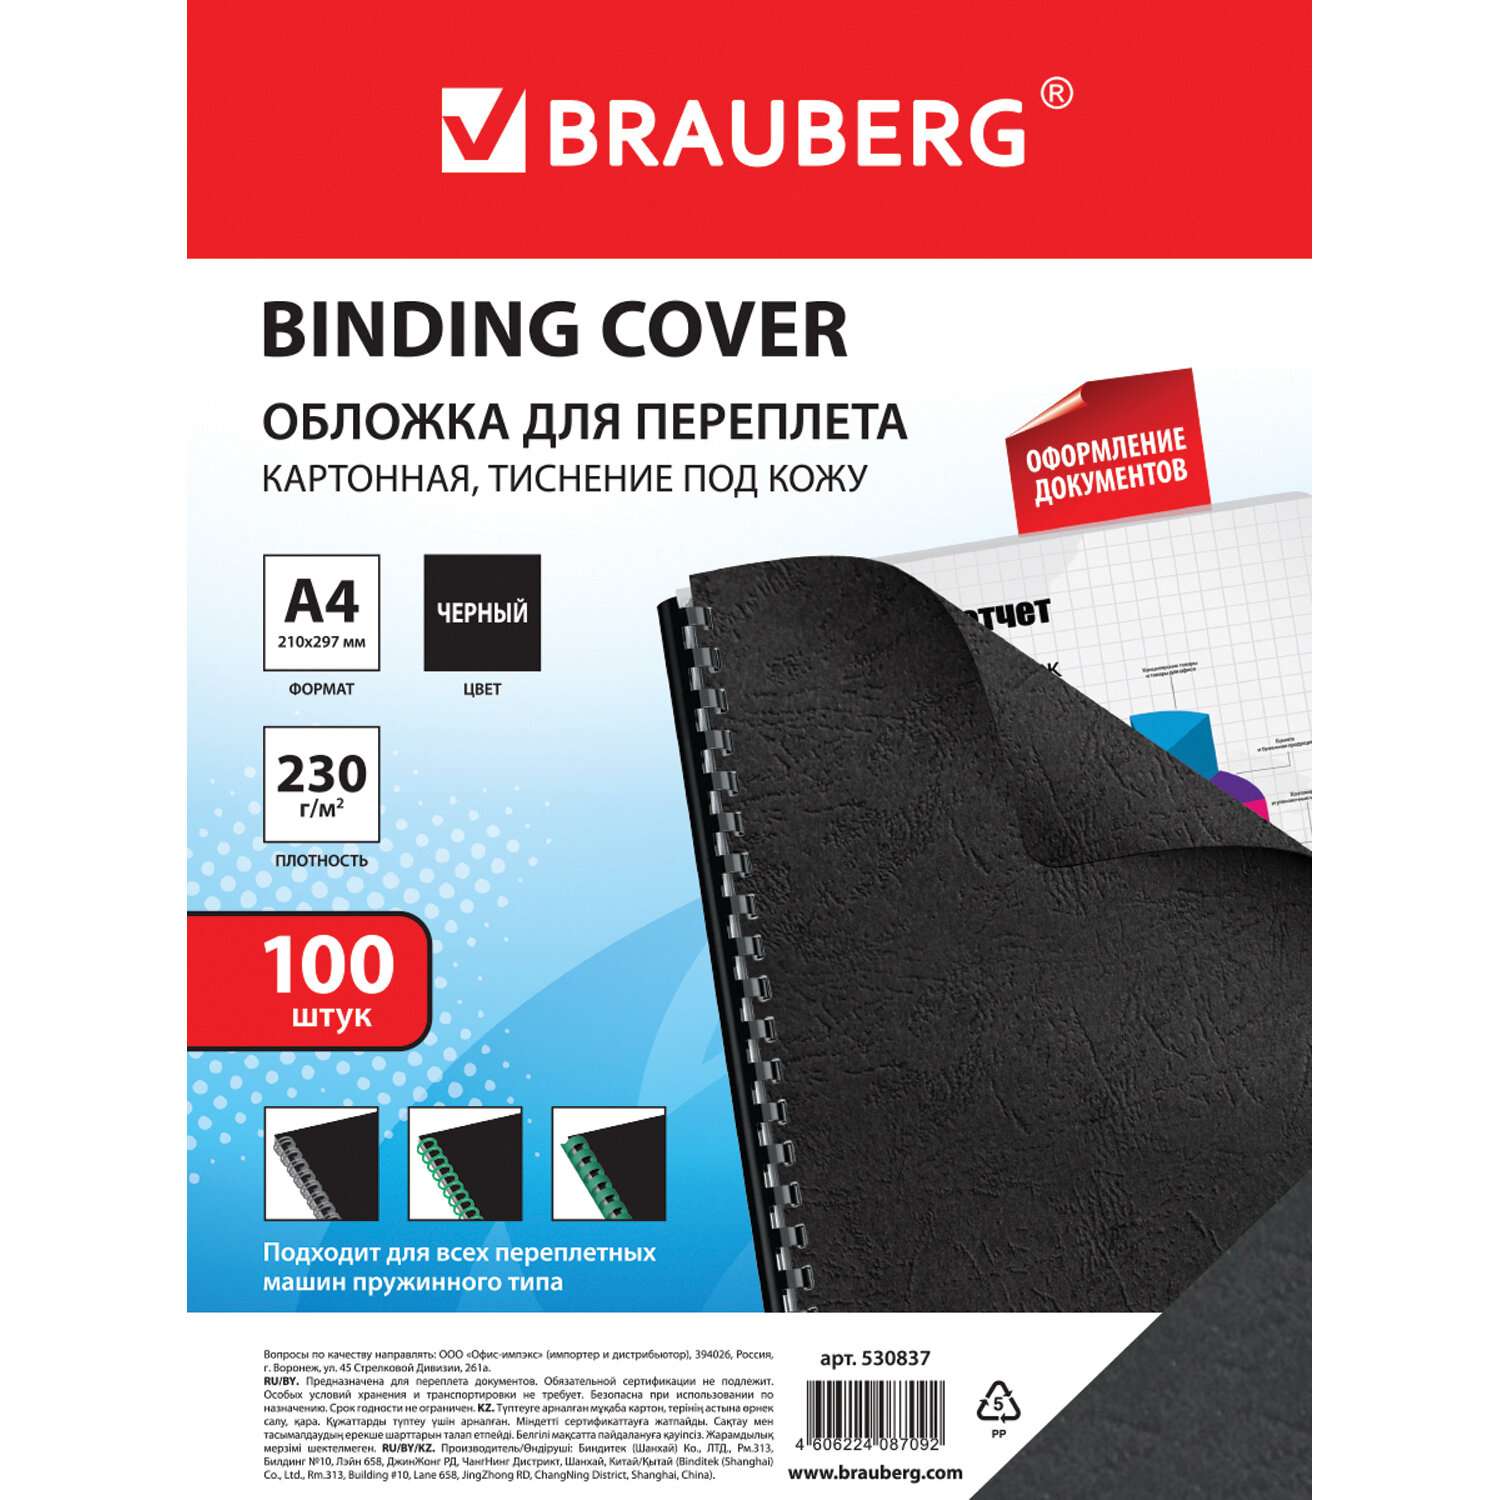 Обложки для переплета Brauberg картонные А4 набор 100 штук тиснение под кожу черные - фото 8